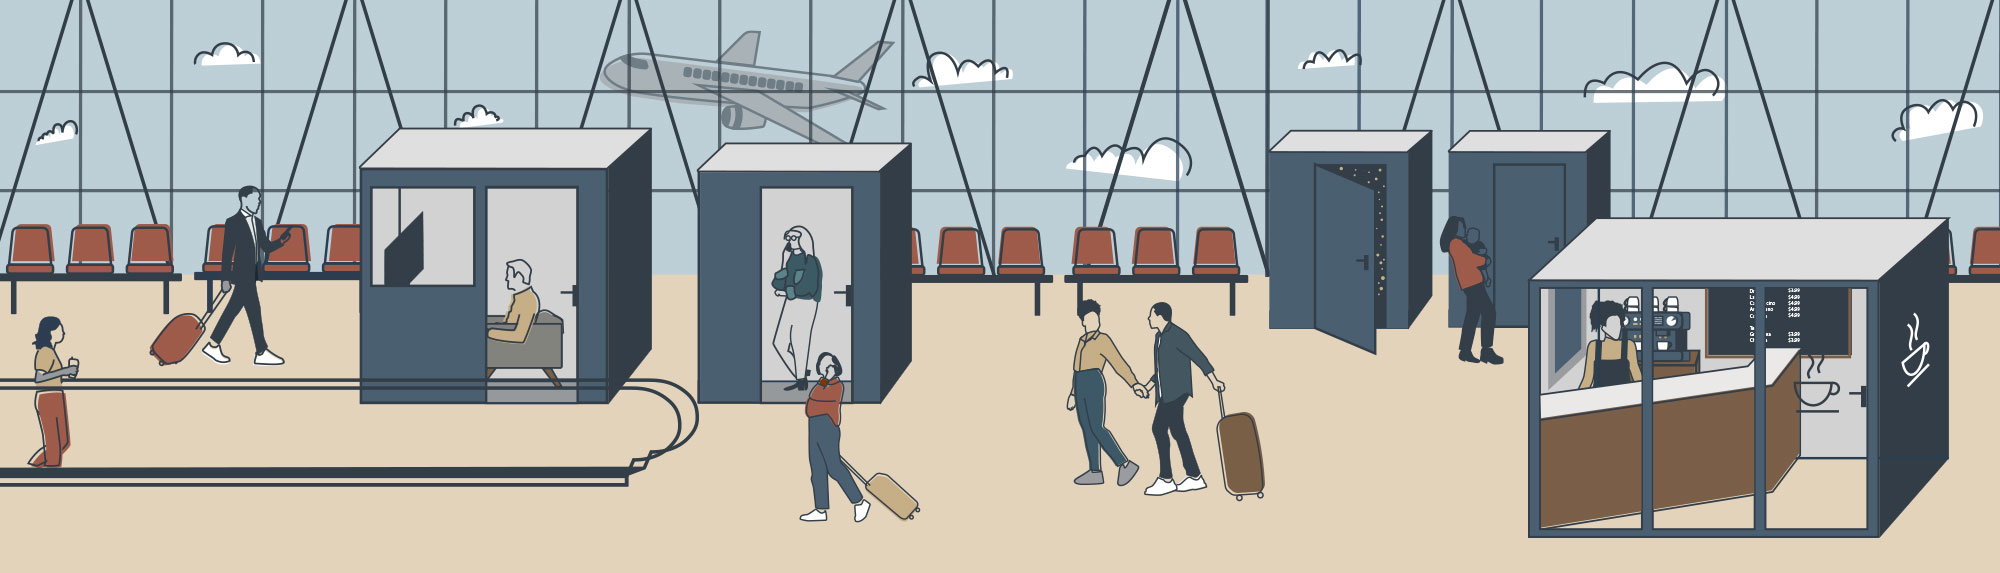 public spaces airport illustration